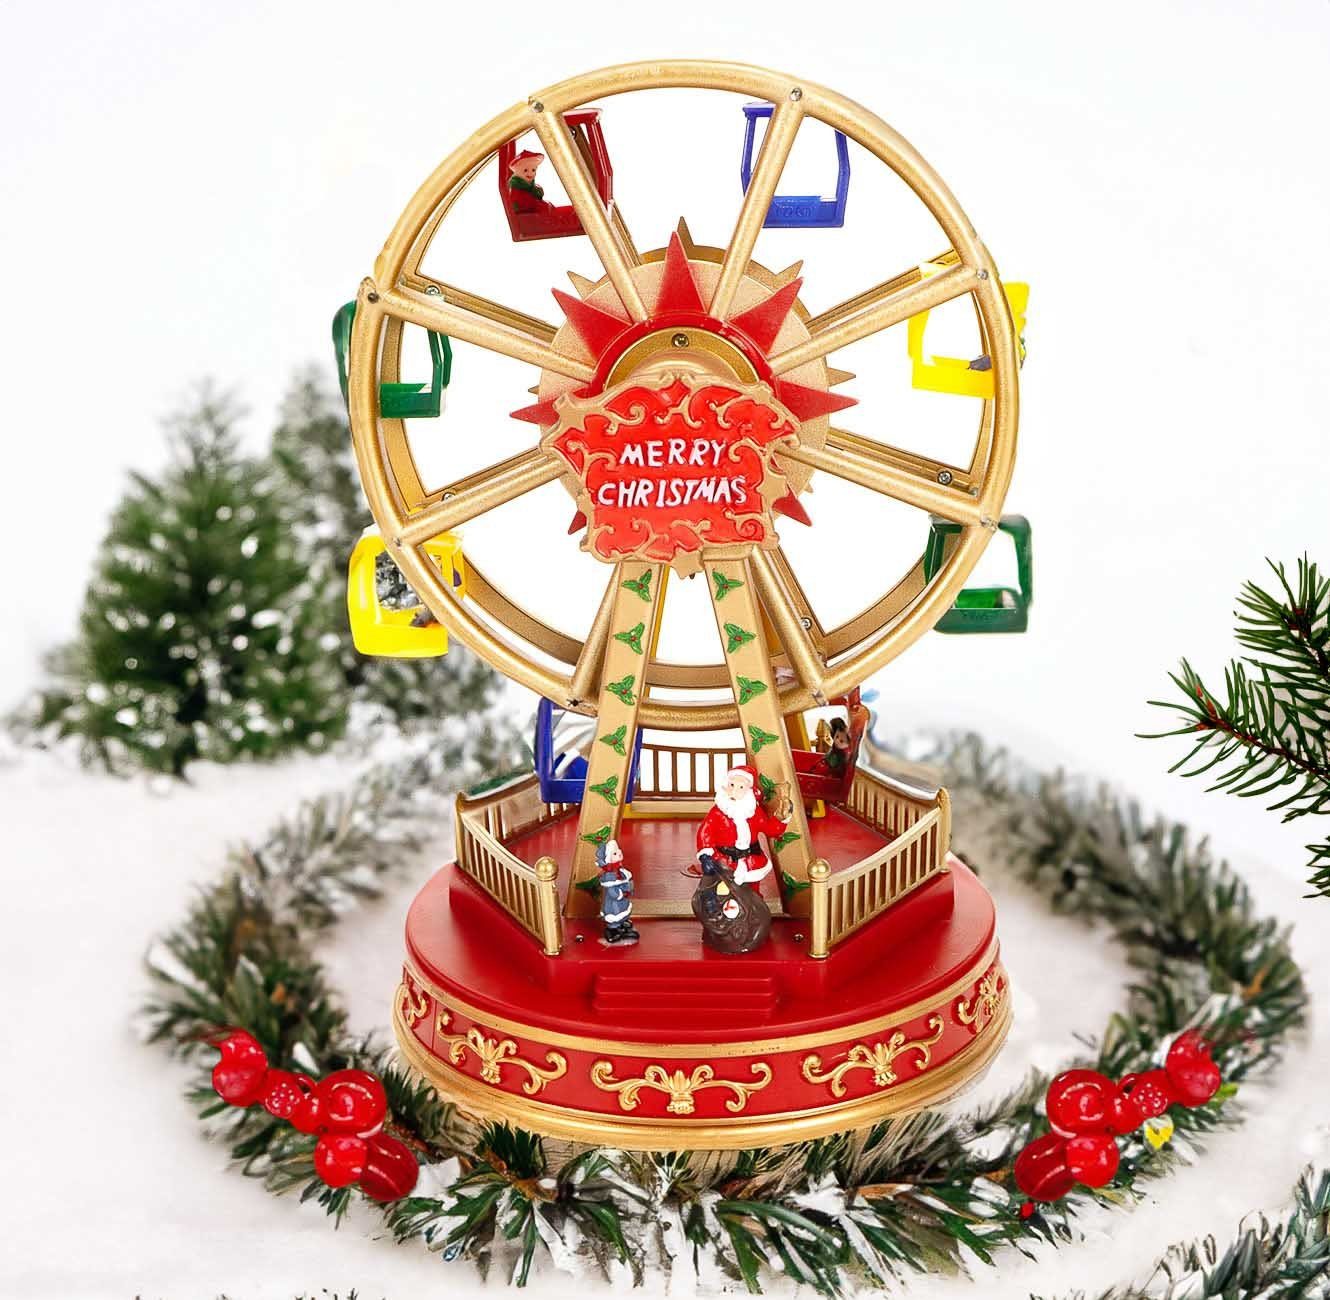 LuVille Weihnachtsszene Weihnachtsmarkt Fahrgeschäft, Riesenrad mit Gondeln, Fahrgästen 4 8